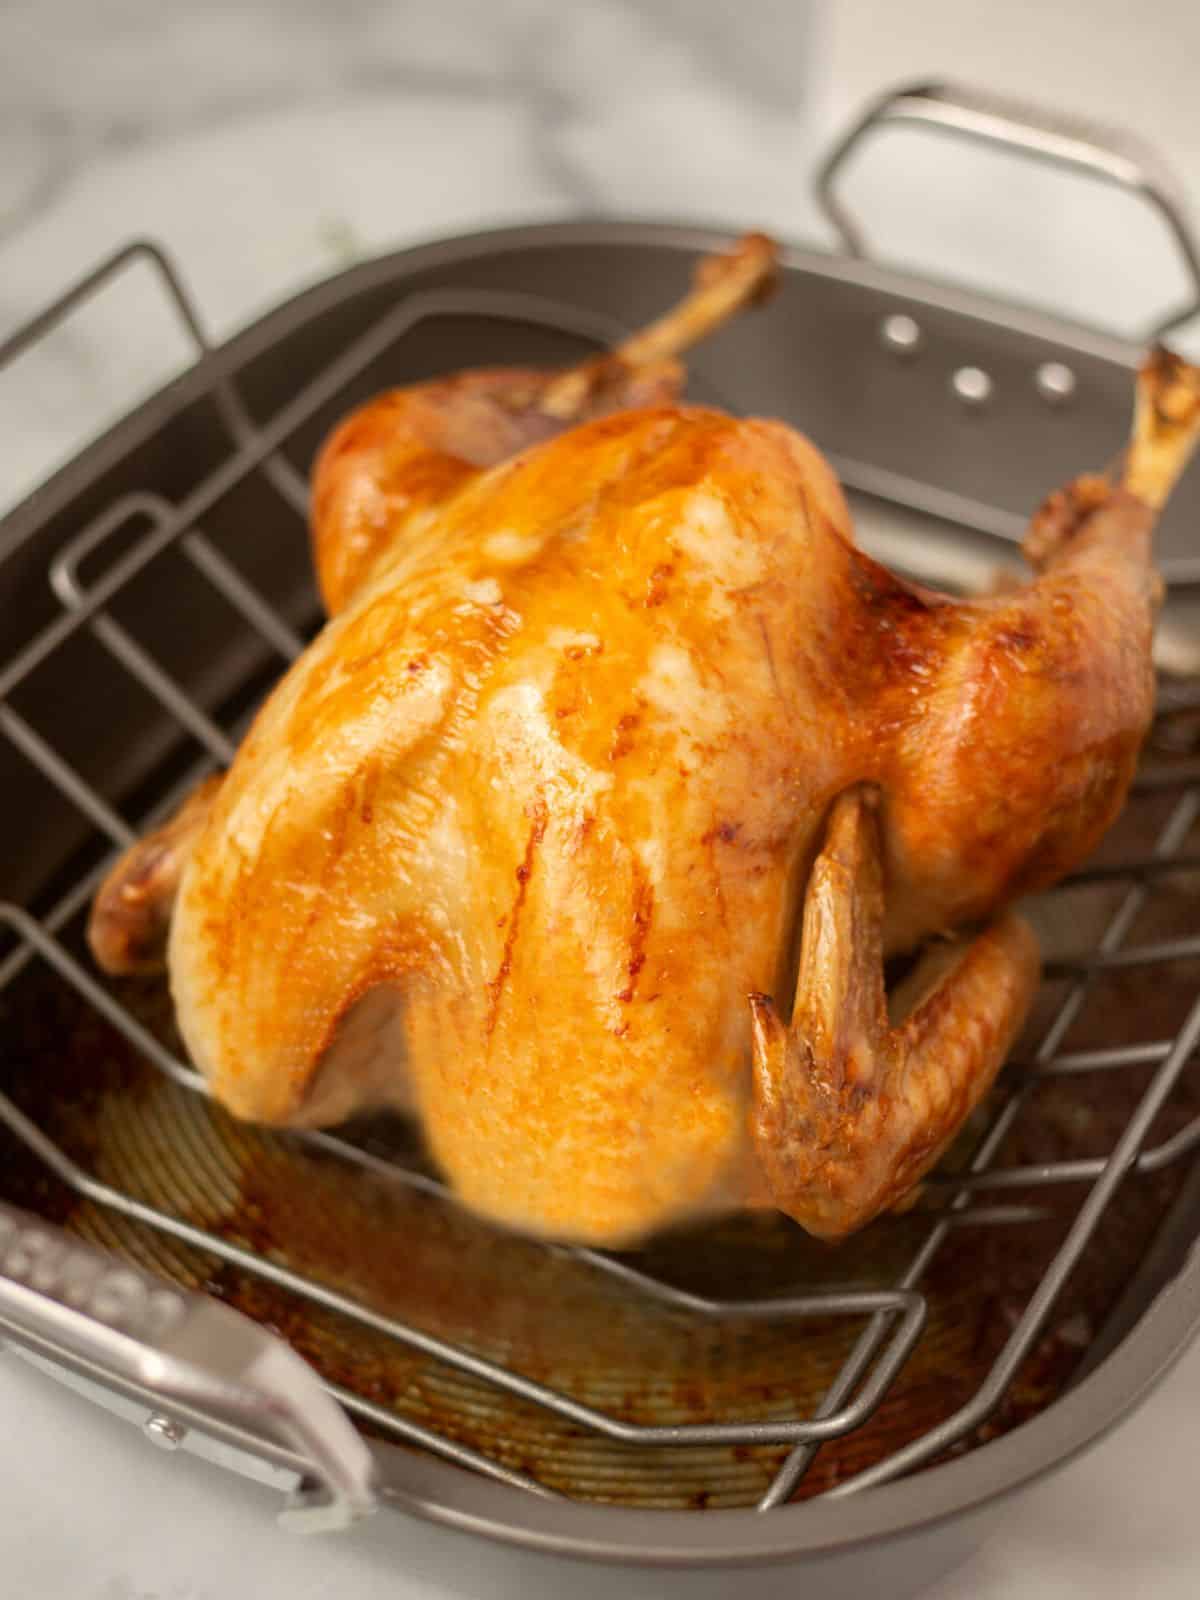 Roasted Turkey in roasting pan.